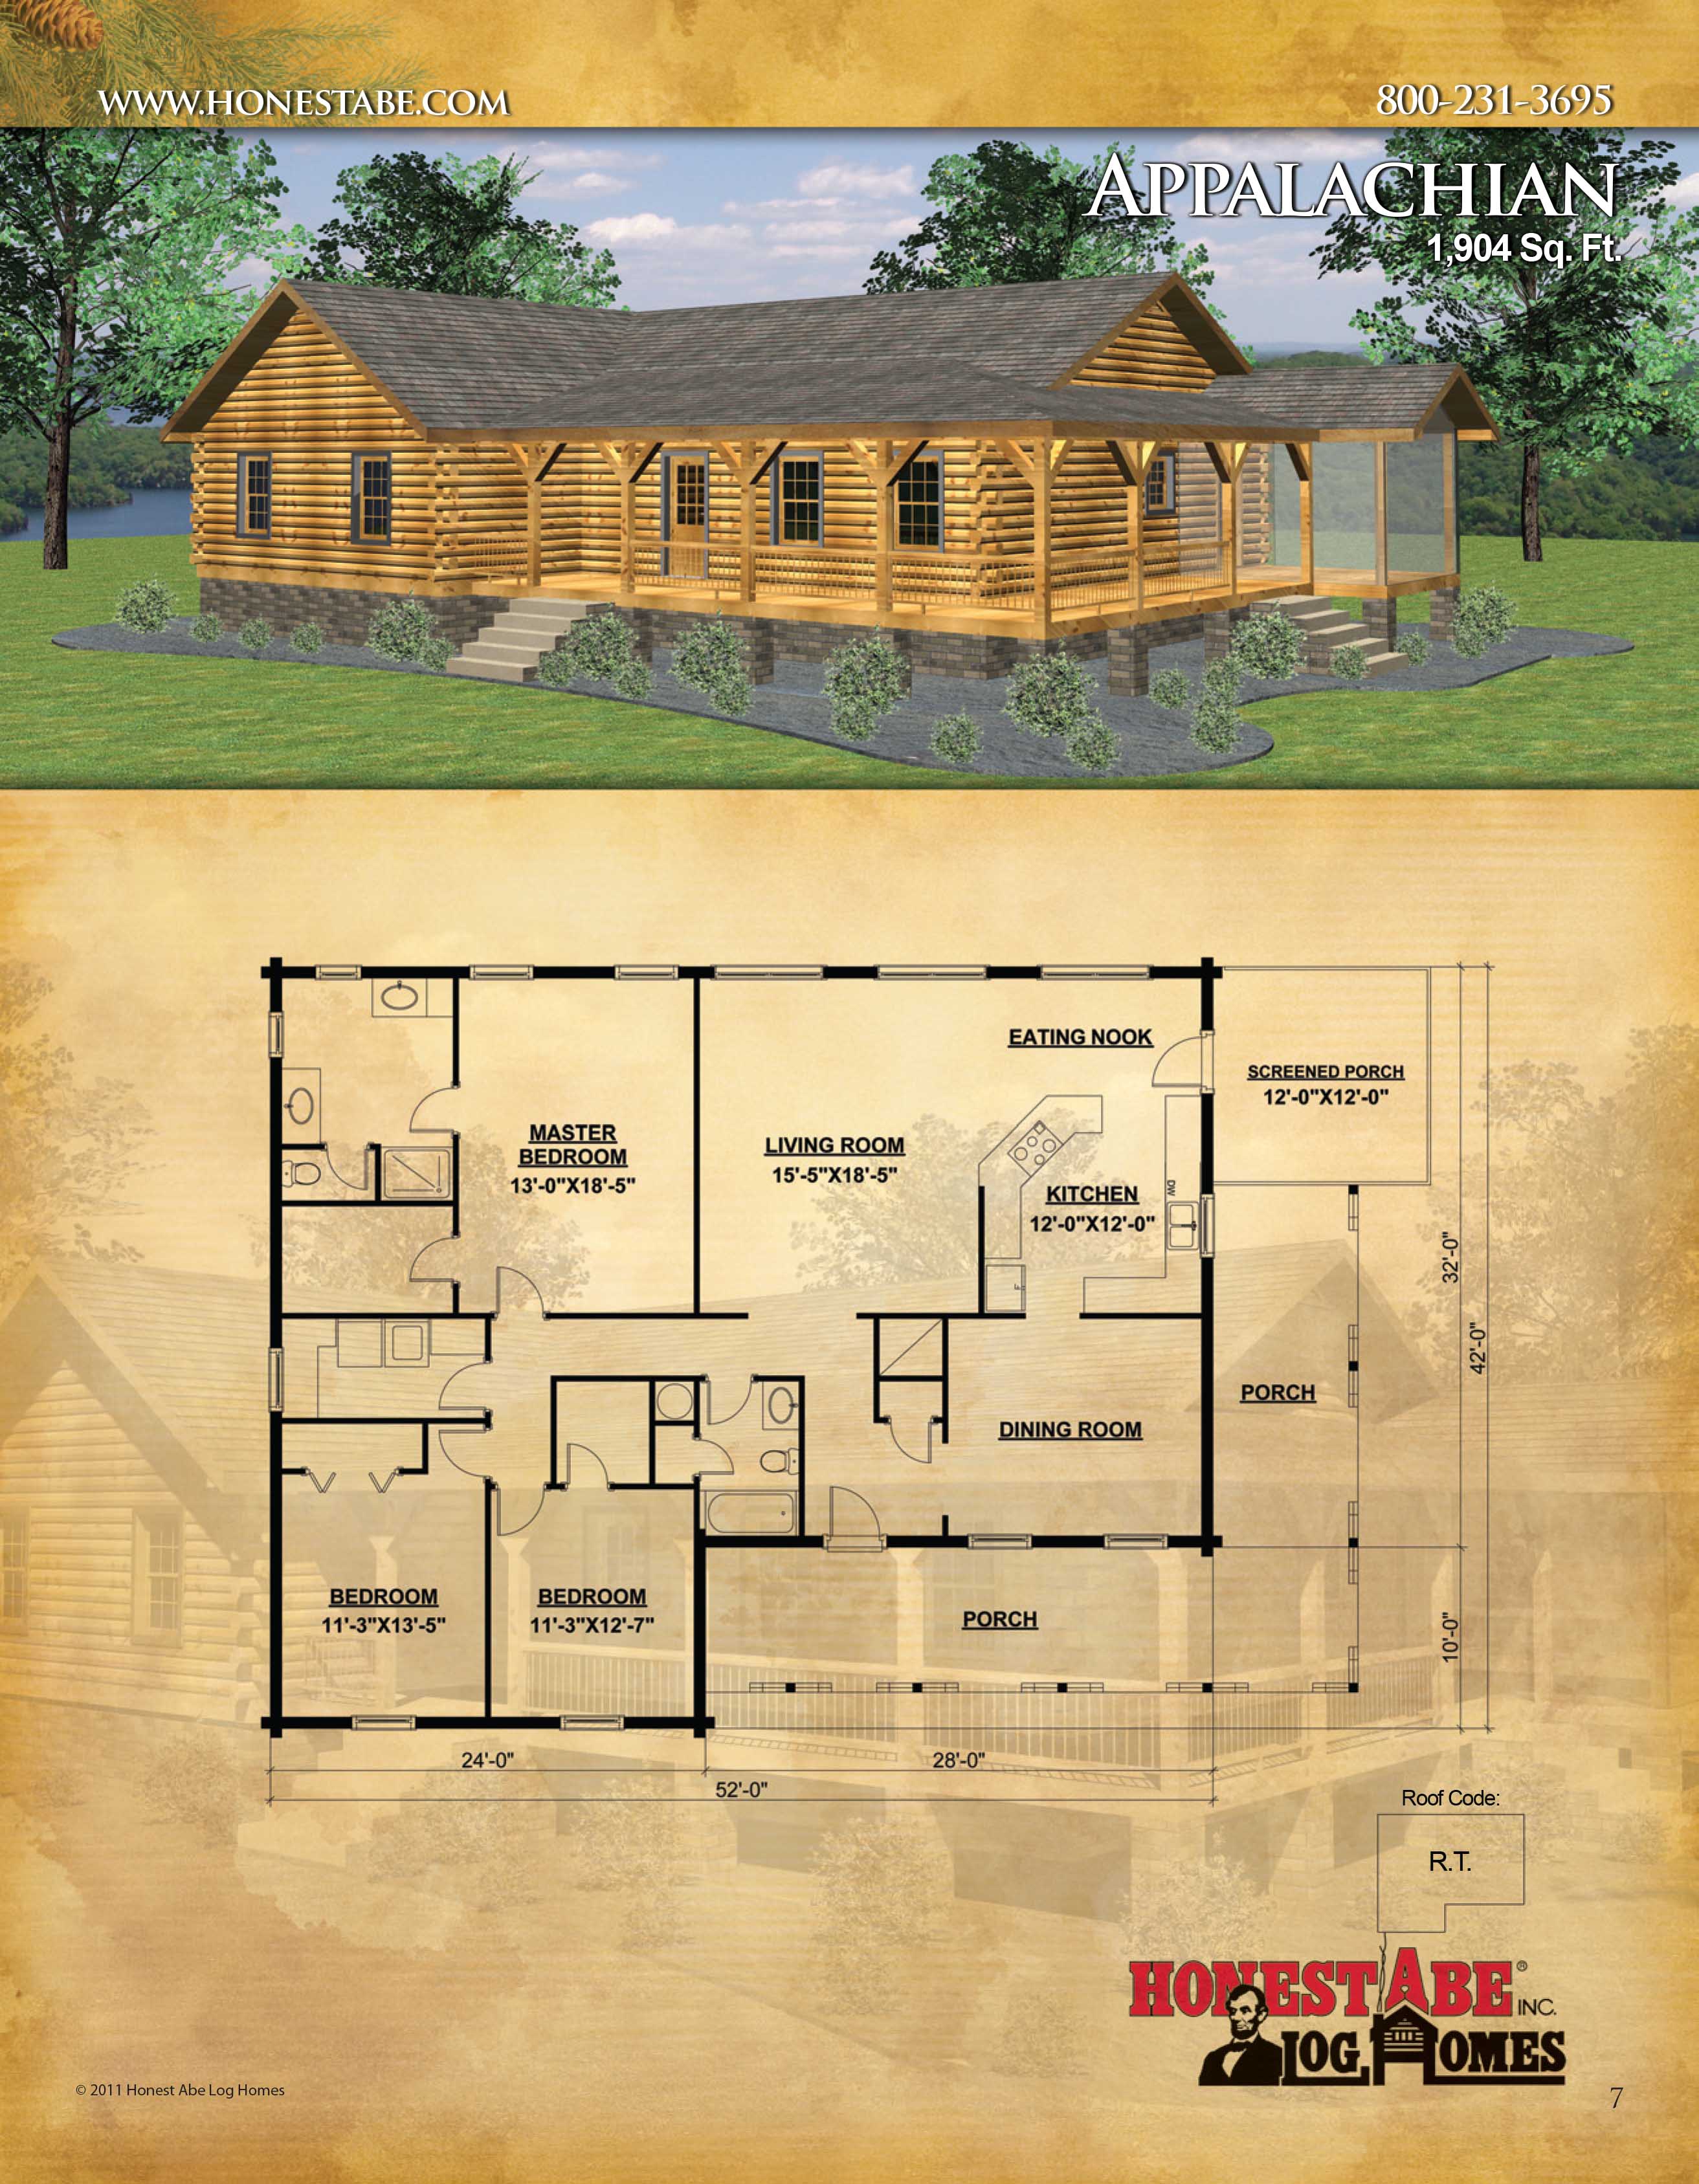 3 bedroom log cabin plans